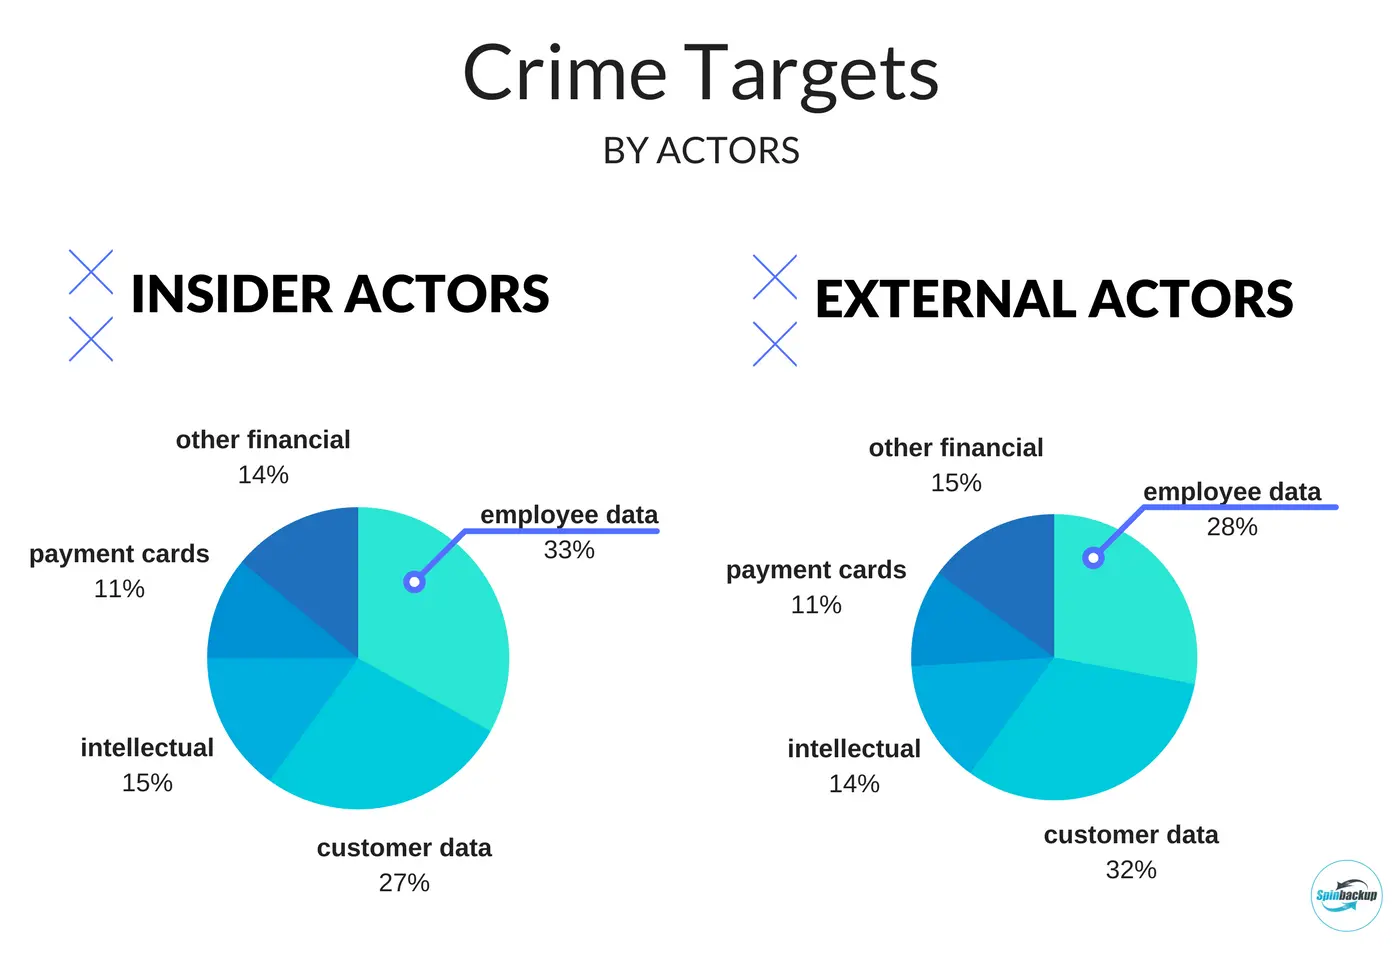 Crime targets